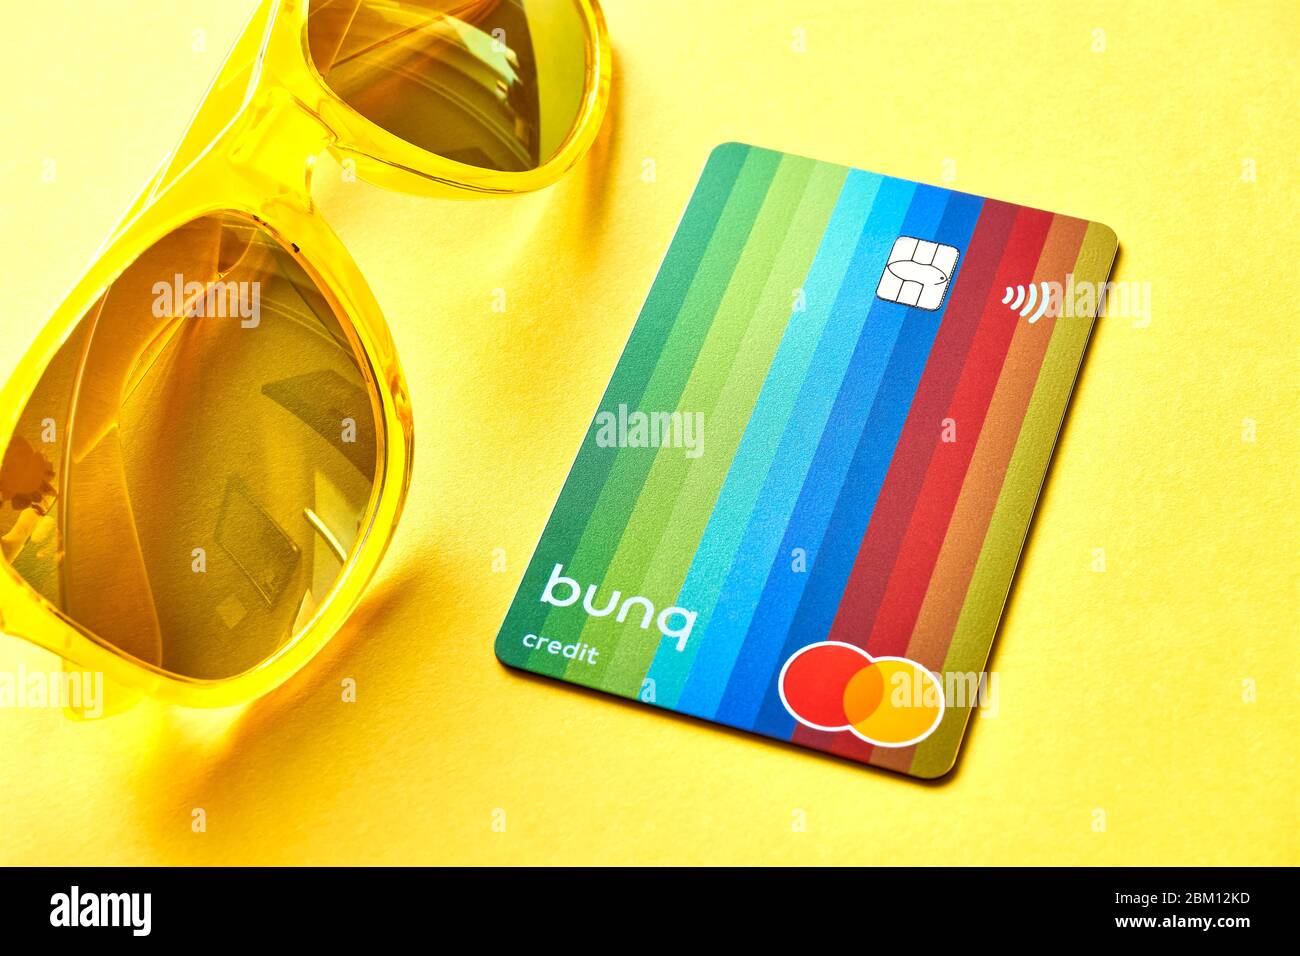 Franeker, Niederlande - 1. März 2020: Die bunq Travel Card ist eine Prepaid Mastercard Kreditkarte. Bunq ist eine niederländische, international tätige Neobank. Stockfoto